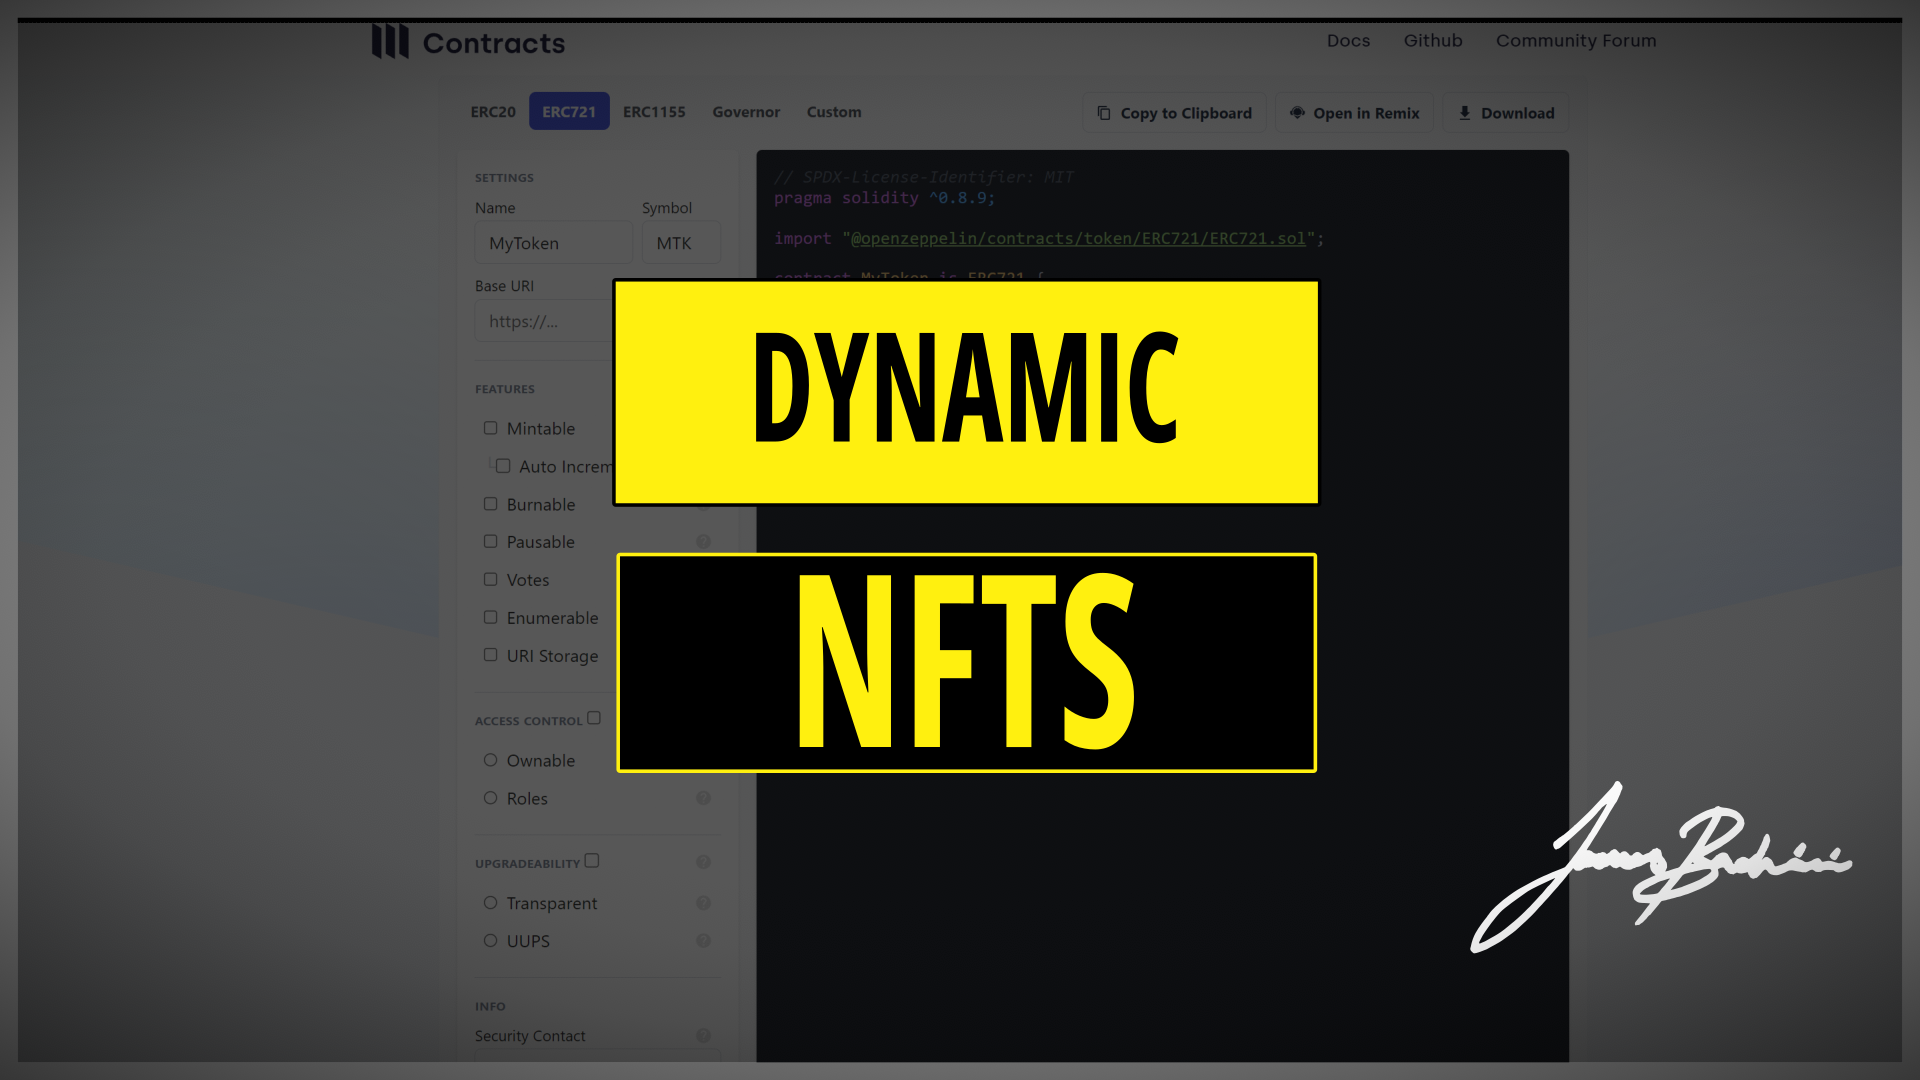 Dynamic NFTs